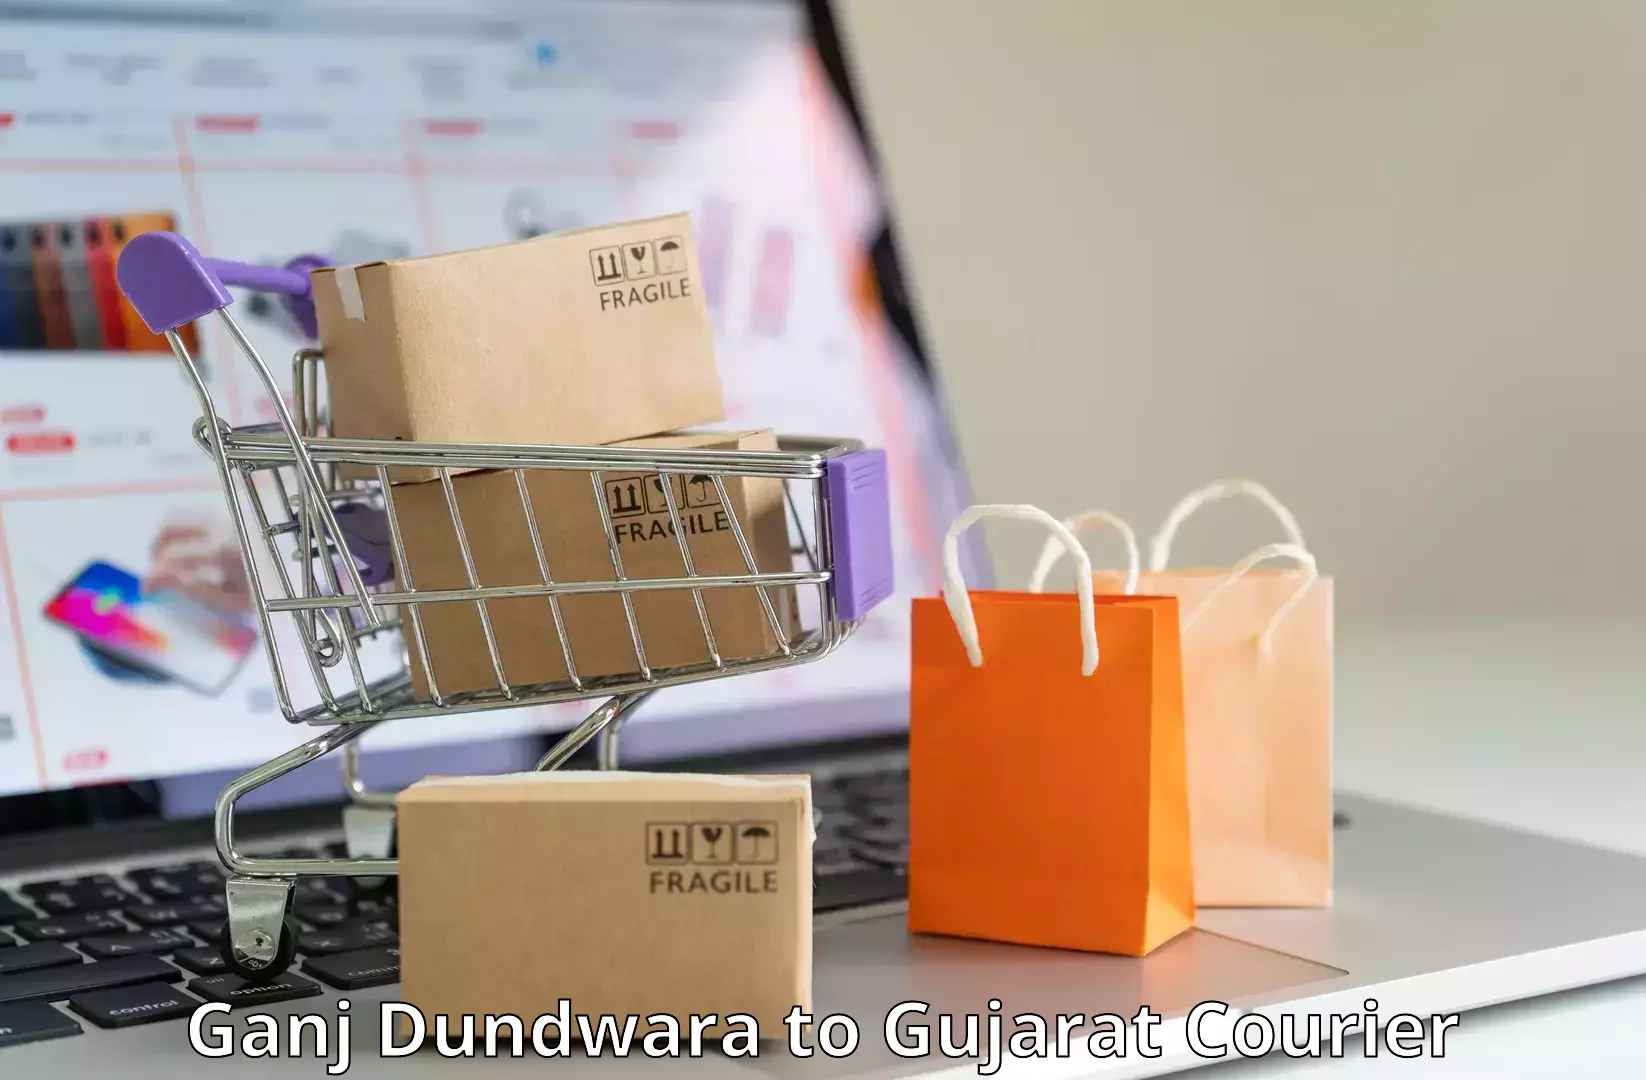 Personal parcel delivery Ganj Dundwara to Mendarda